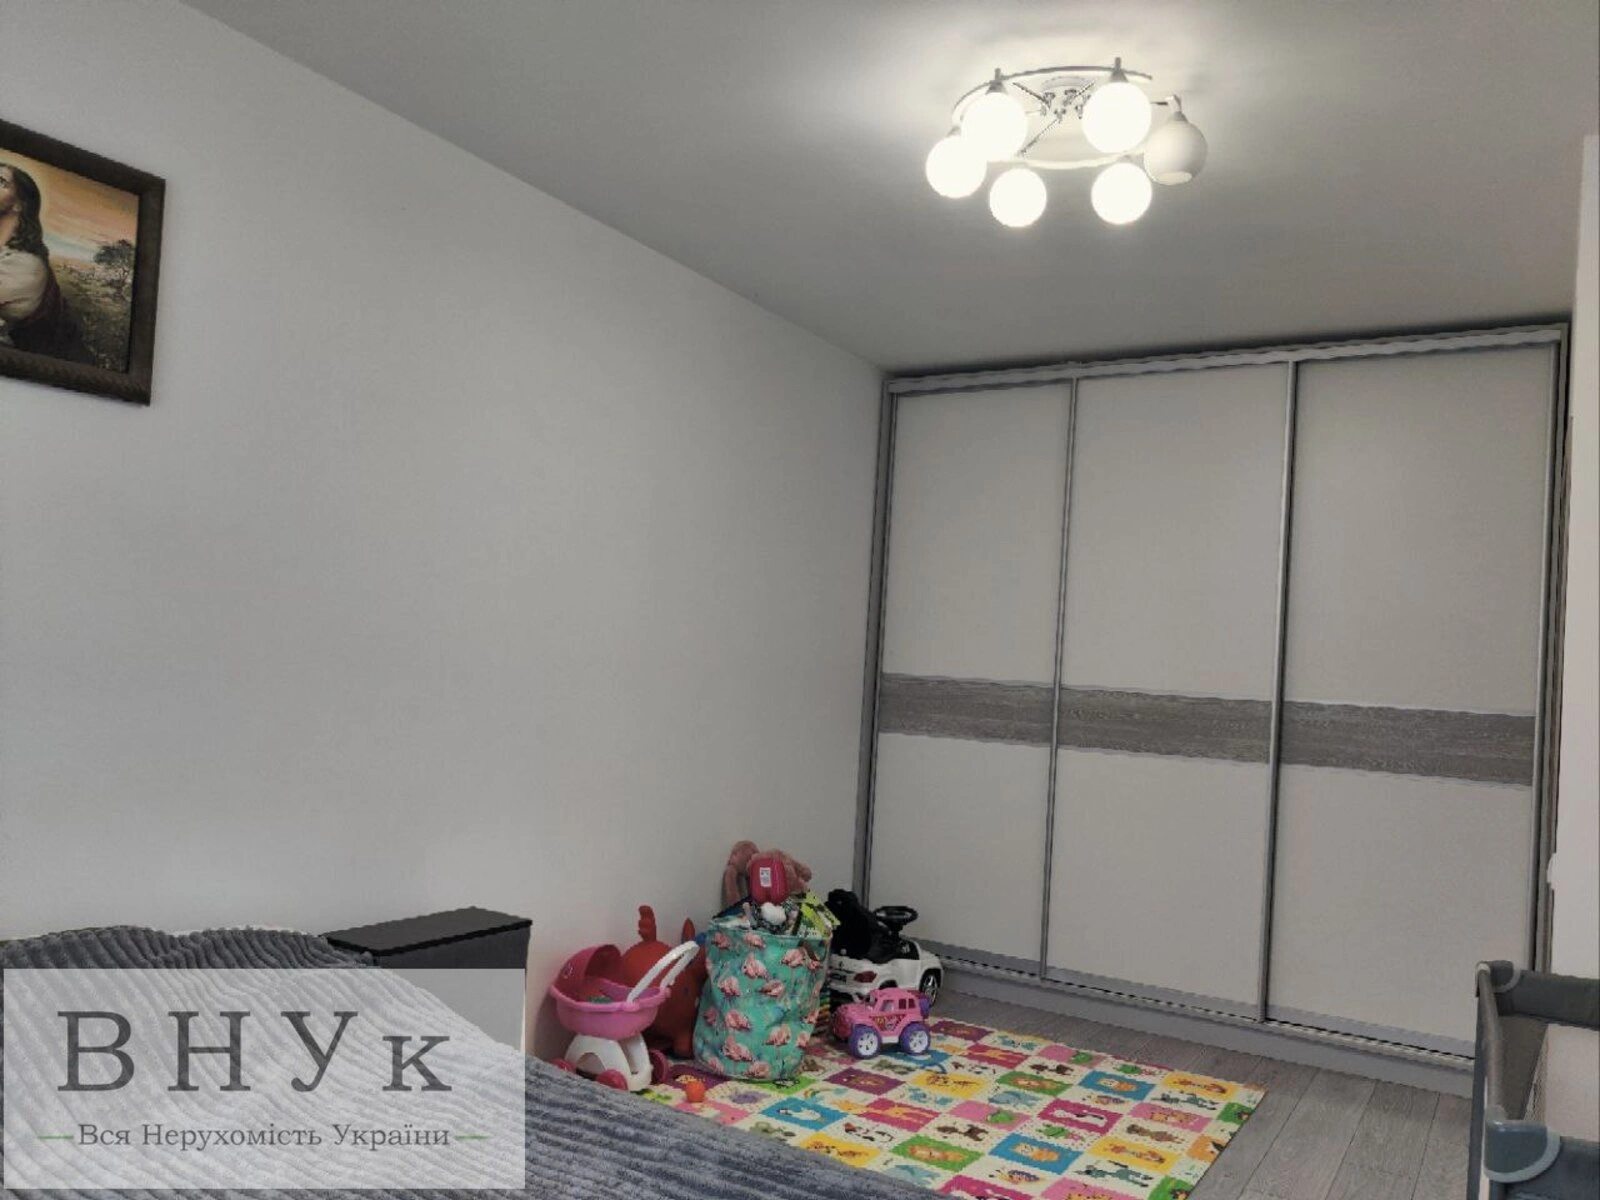 Продам 1-кімнатну квартиру з чудовим ремонтом у новобудові по вулиці Богдана Хмельницького